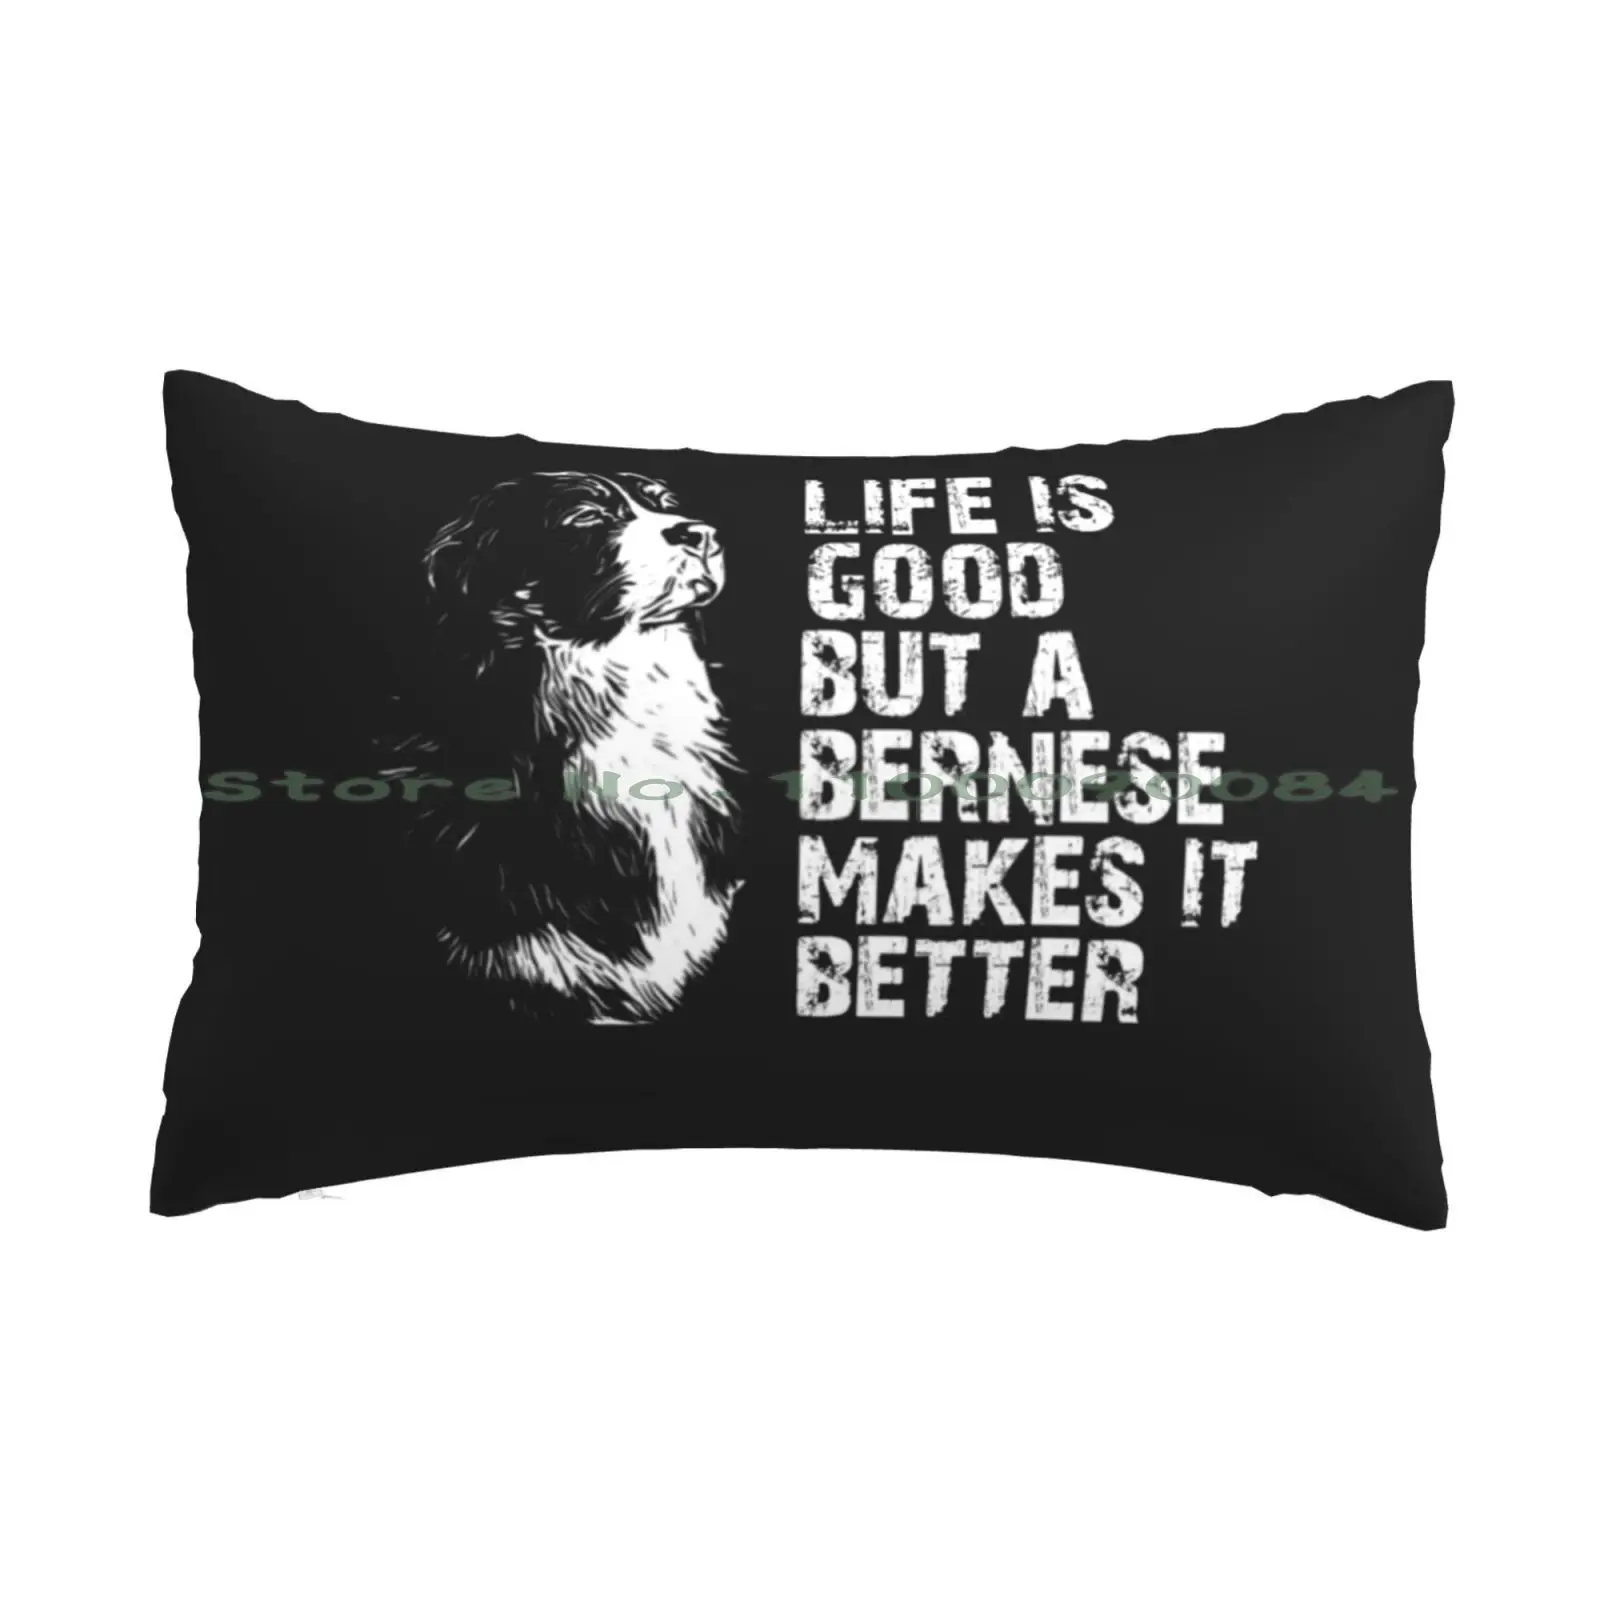 

Чехол с подушкой Bernese Mountain Dog 20x30 50*75, диван для спальни, Бернская горная собака, влюбленные Домашние животные, любимые собаки, забавная мамочк...